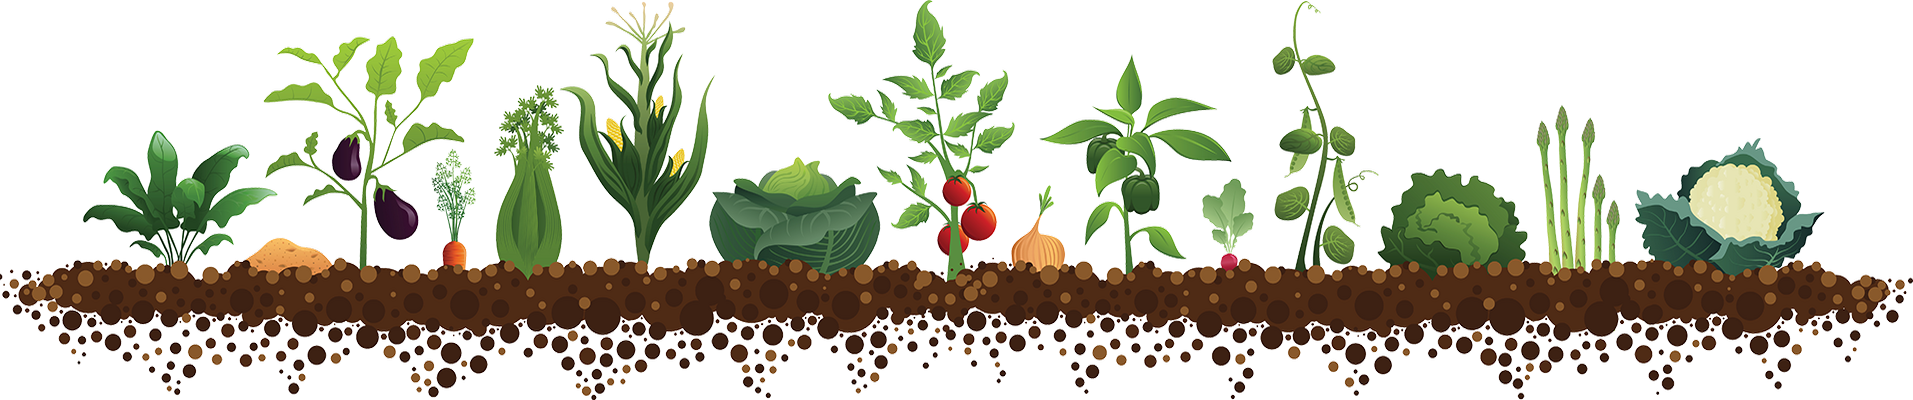 Посів насіння салату в грунт травень 2020 коли сіяти, висаджувати насіння в теплицю, місячний календар